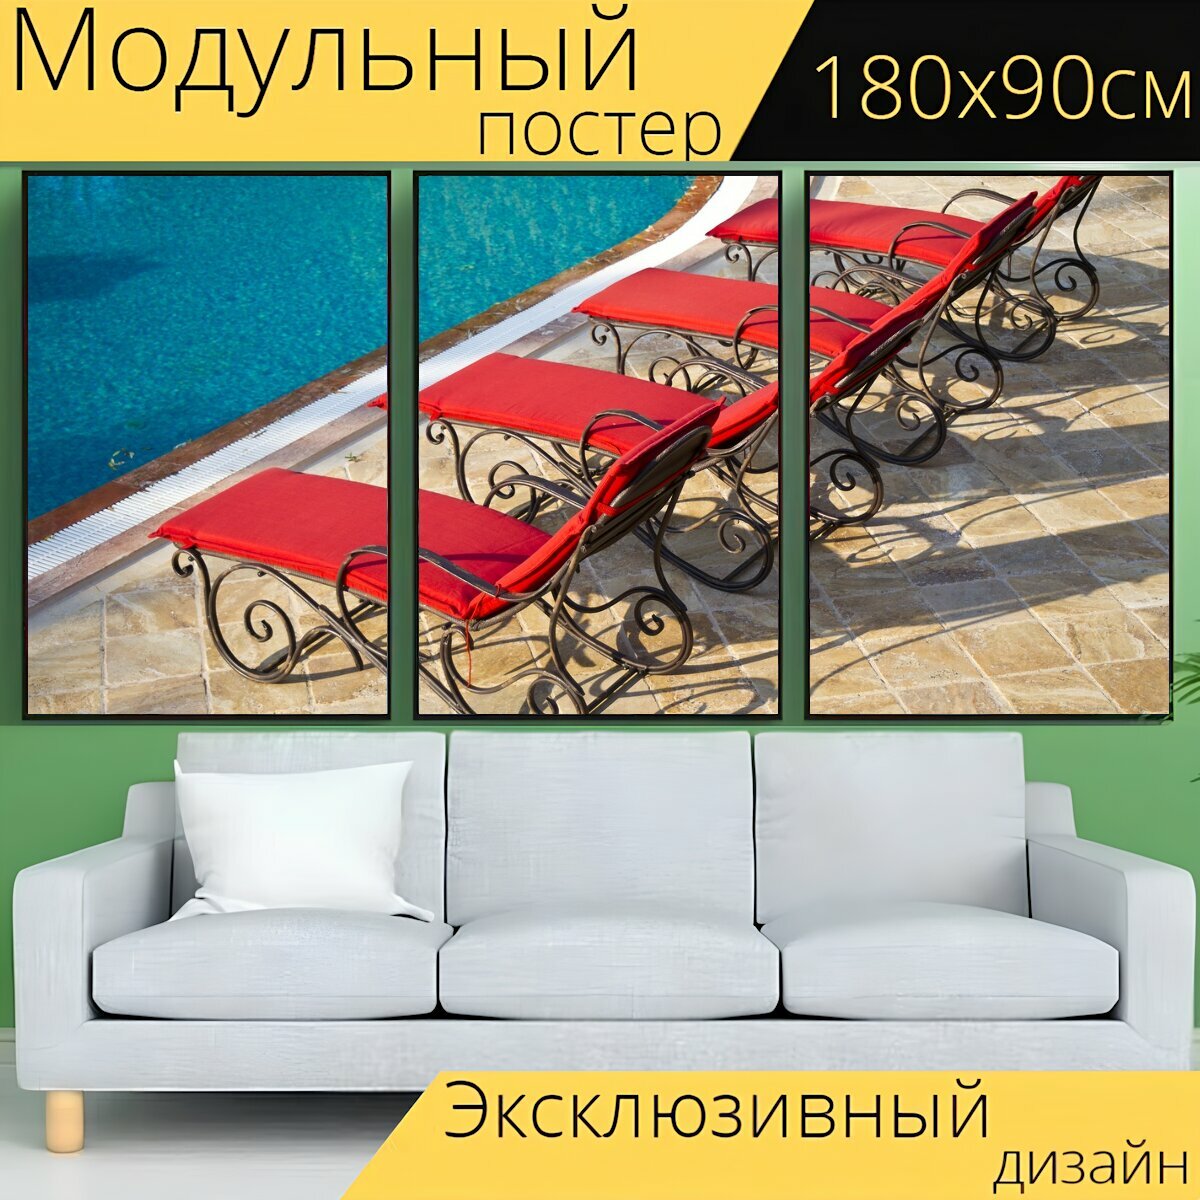 Модульный постер "Шезлонги, бассейн, праздник" 180 x 90 см. для интерьера